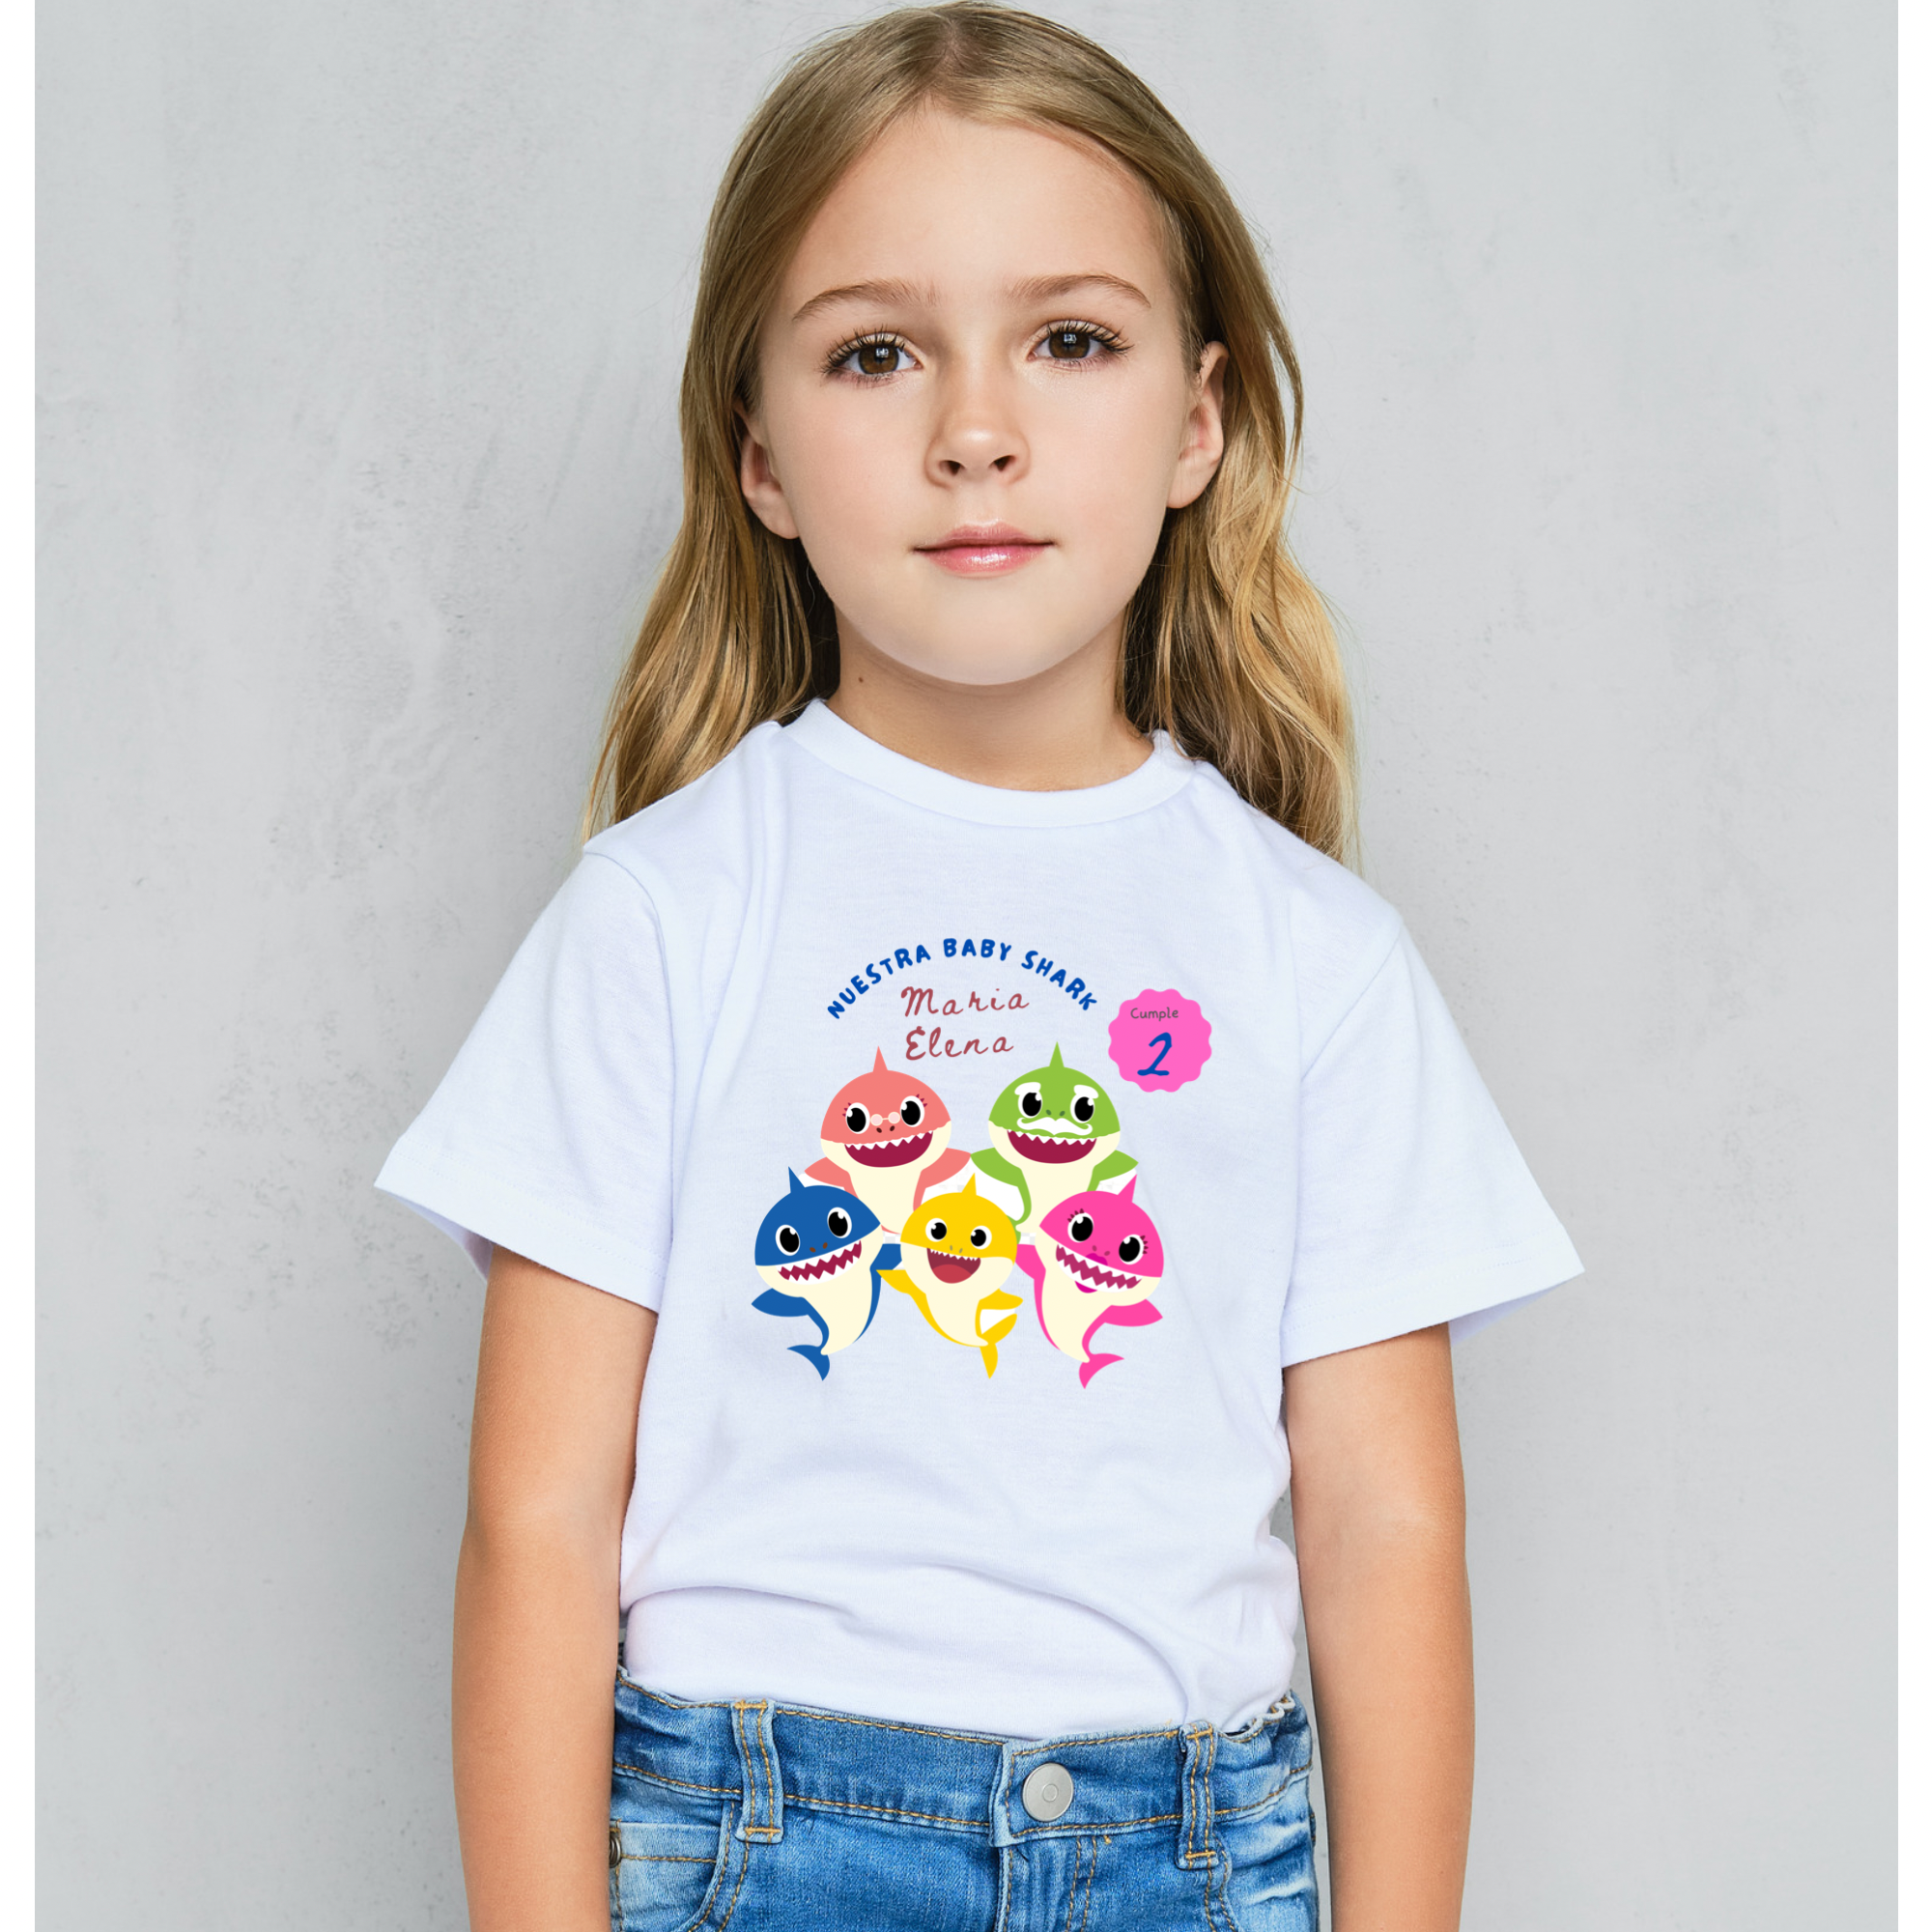 Camisas para niños y adultos de shark -